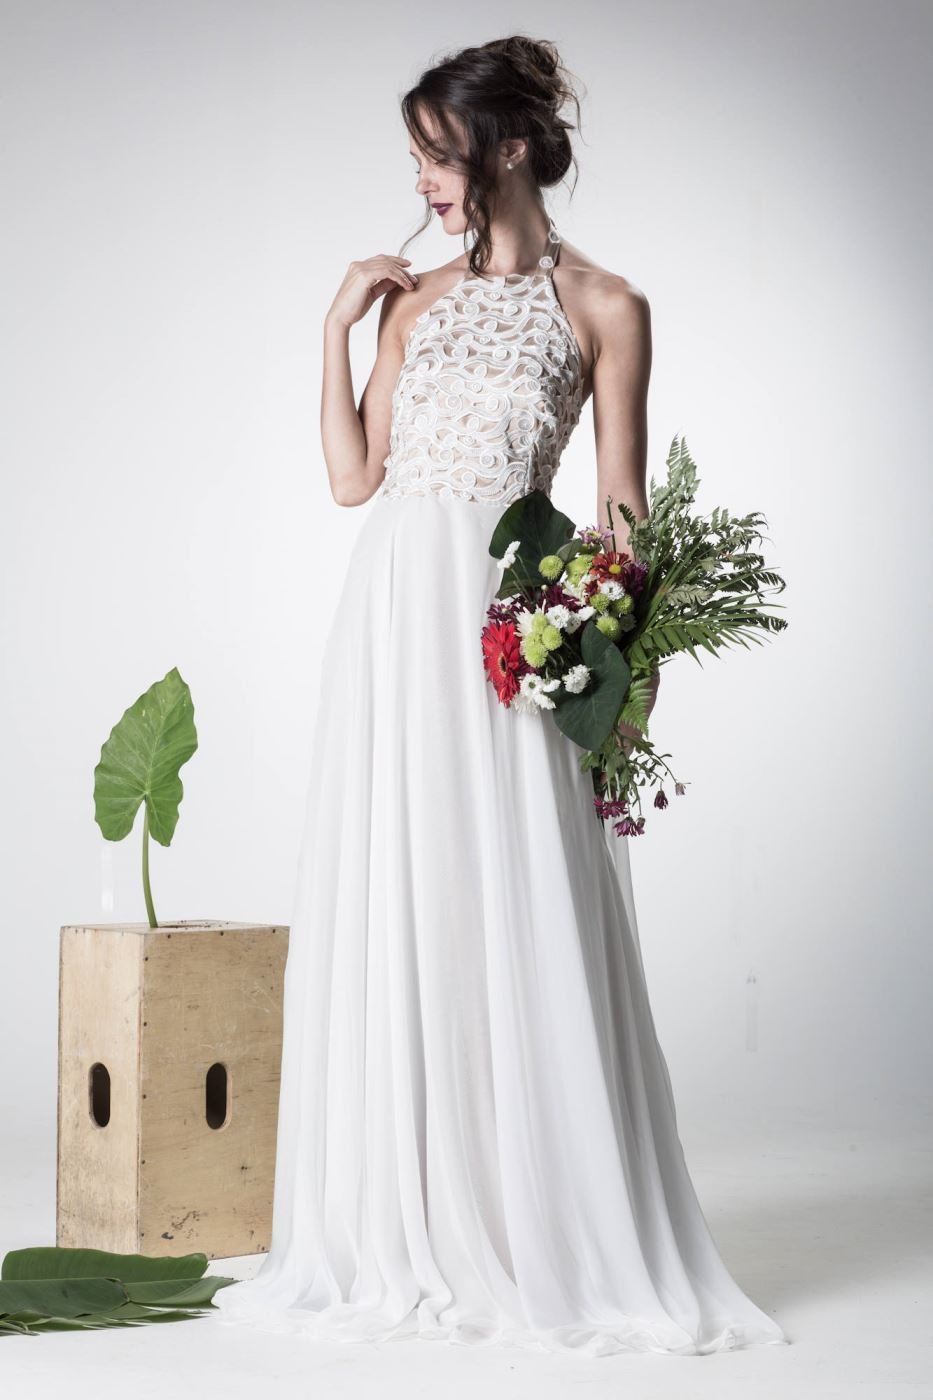 O que é mais vantajoso alugar ou comprar pronto um vestido de noiva?